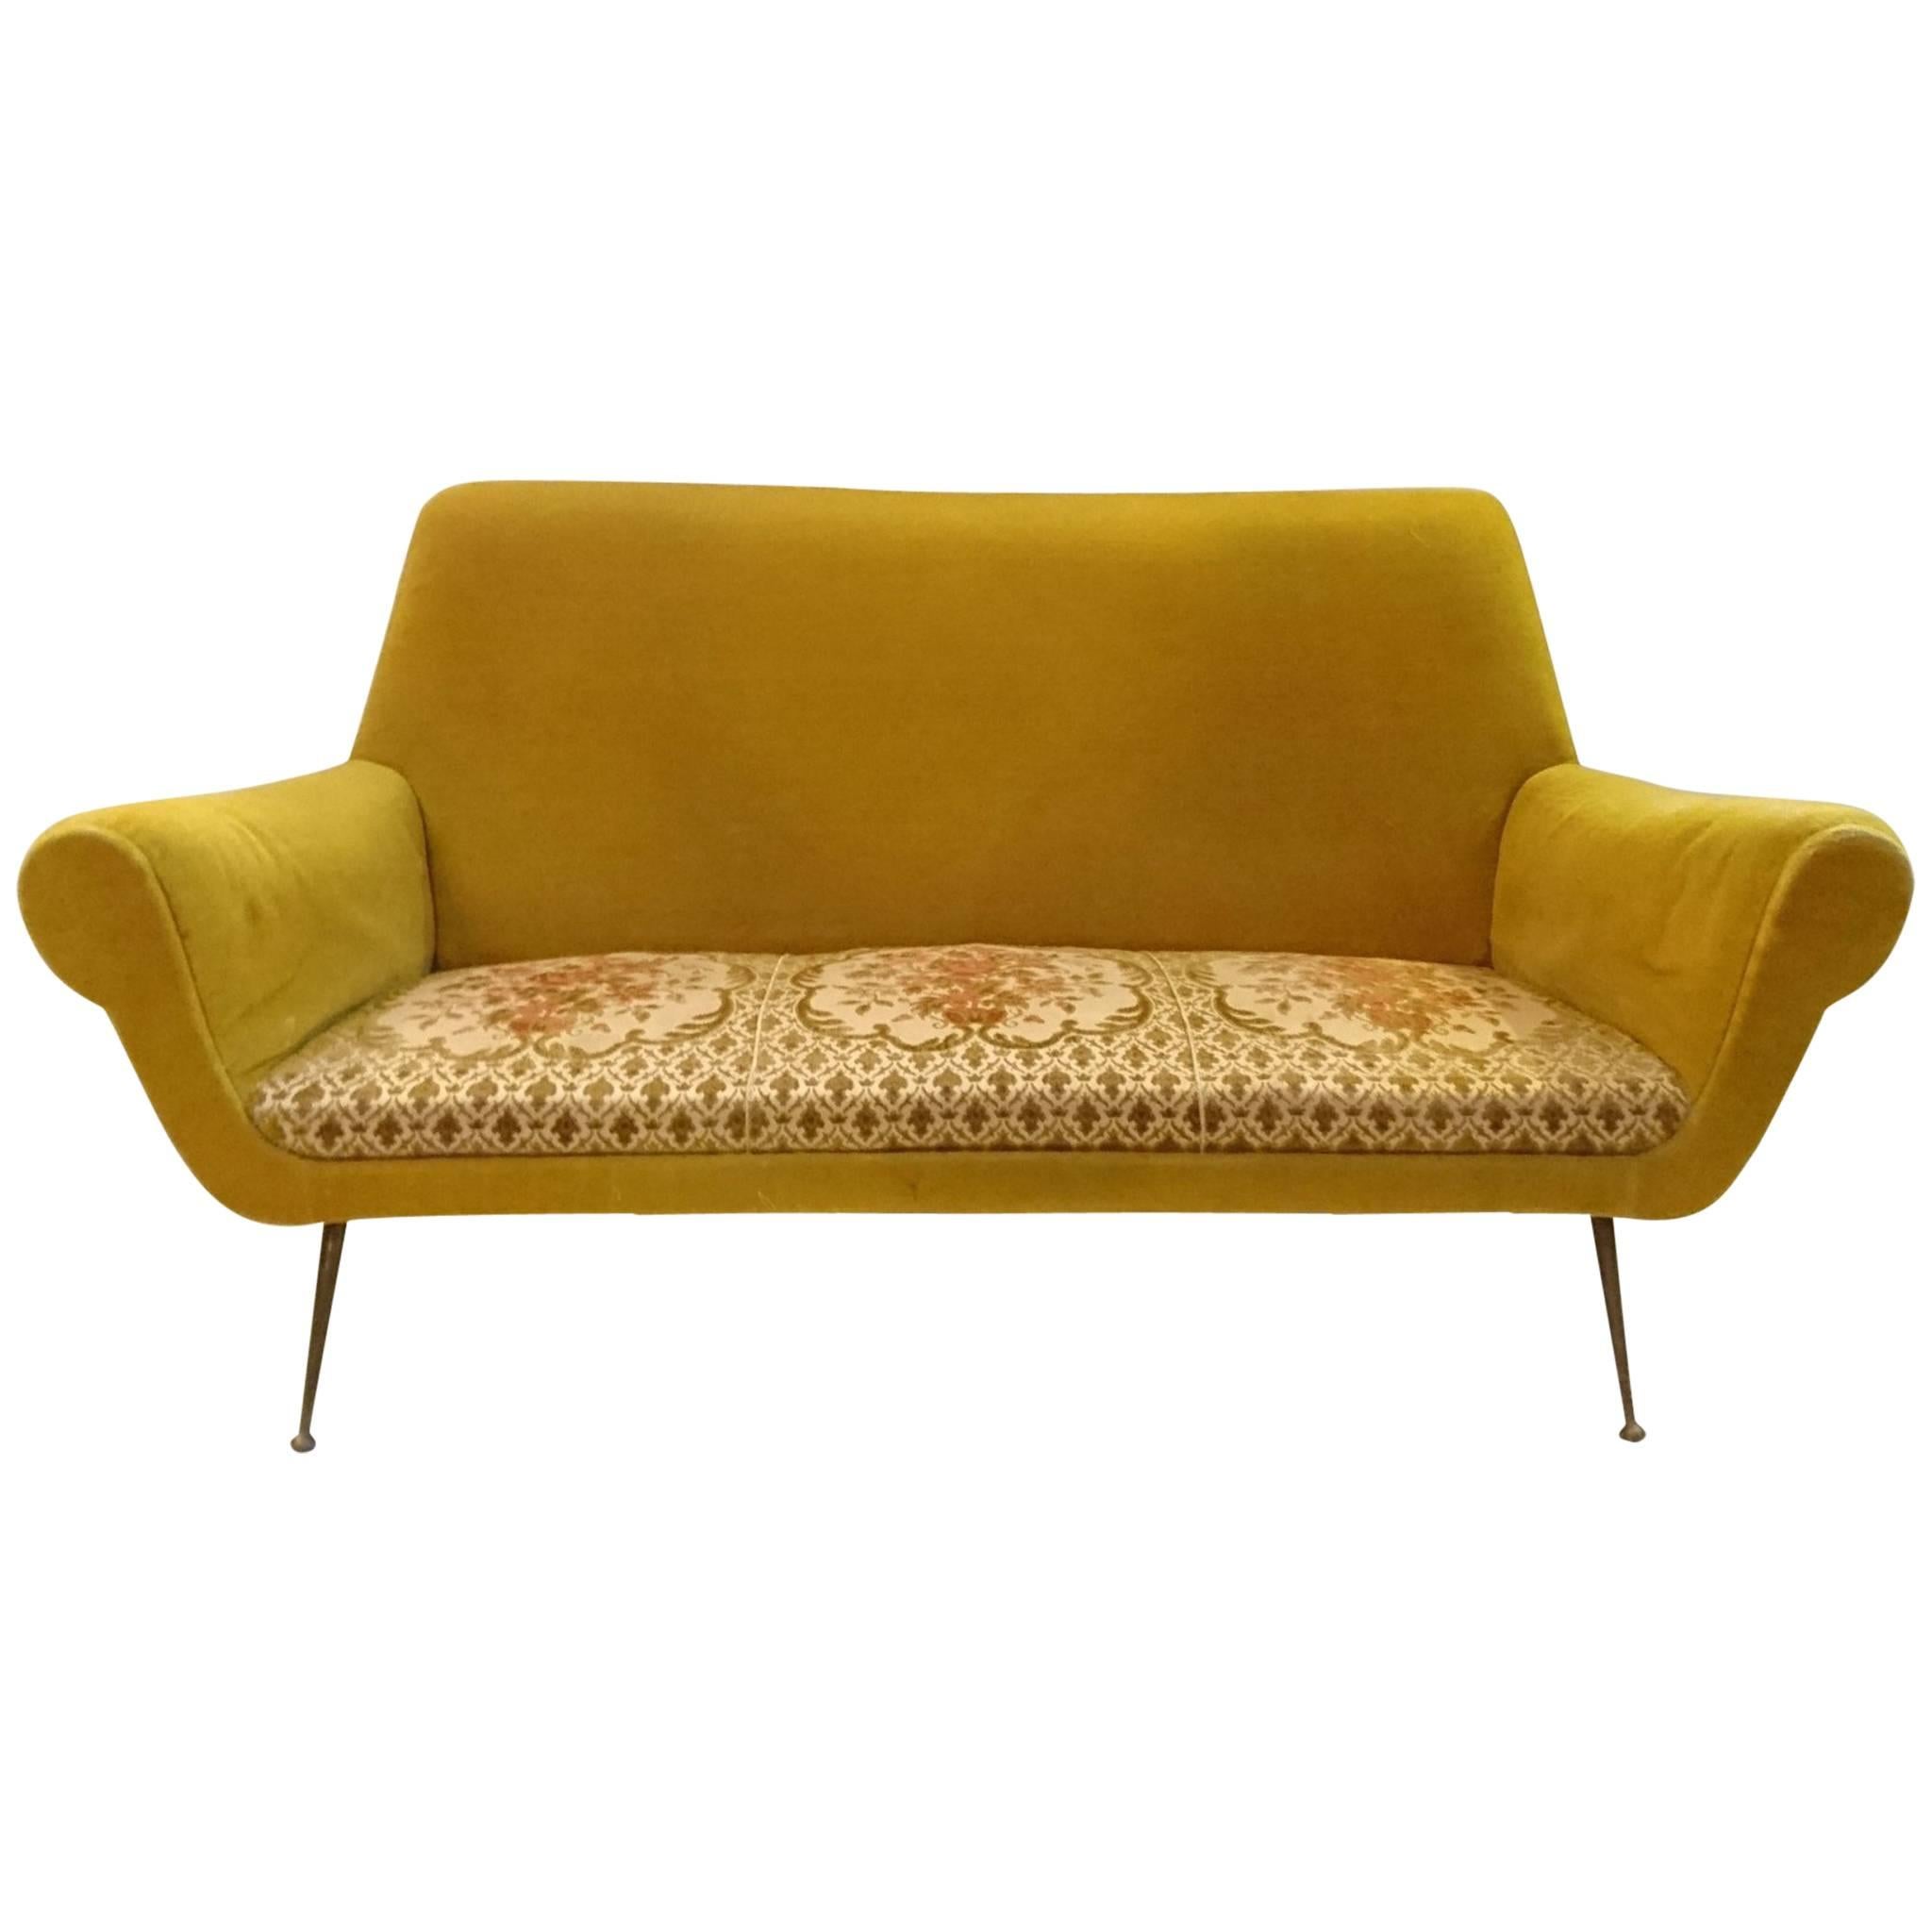 Sofa by Gigi Radice for Minotti, Italy, 1950